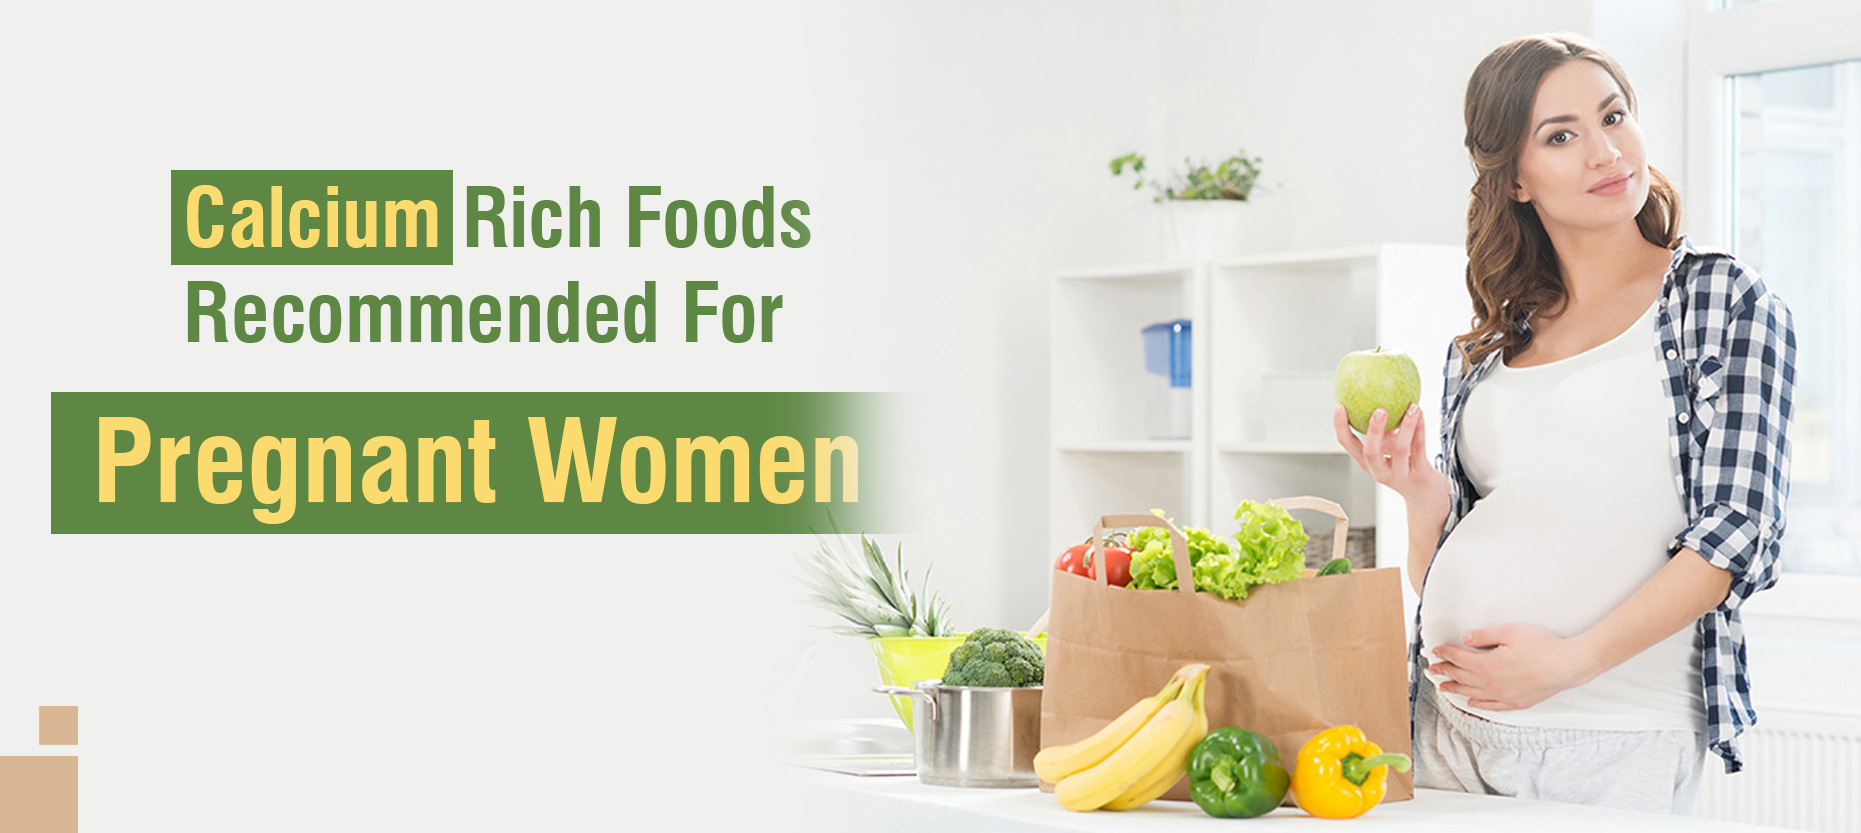 Calcium Foods for Pregnant Women